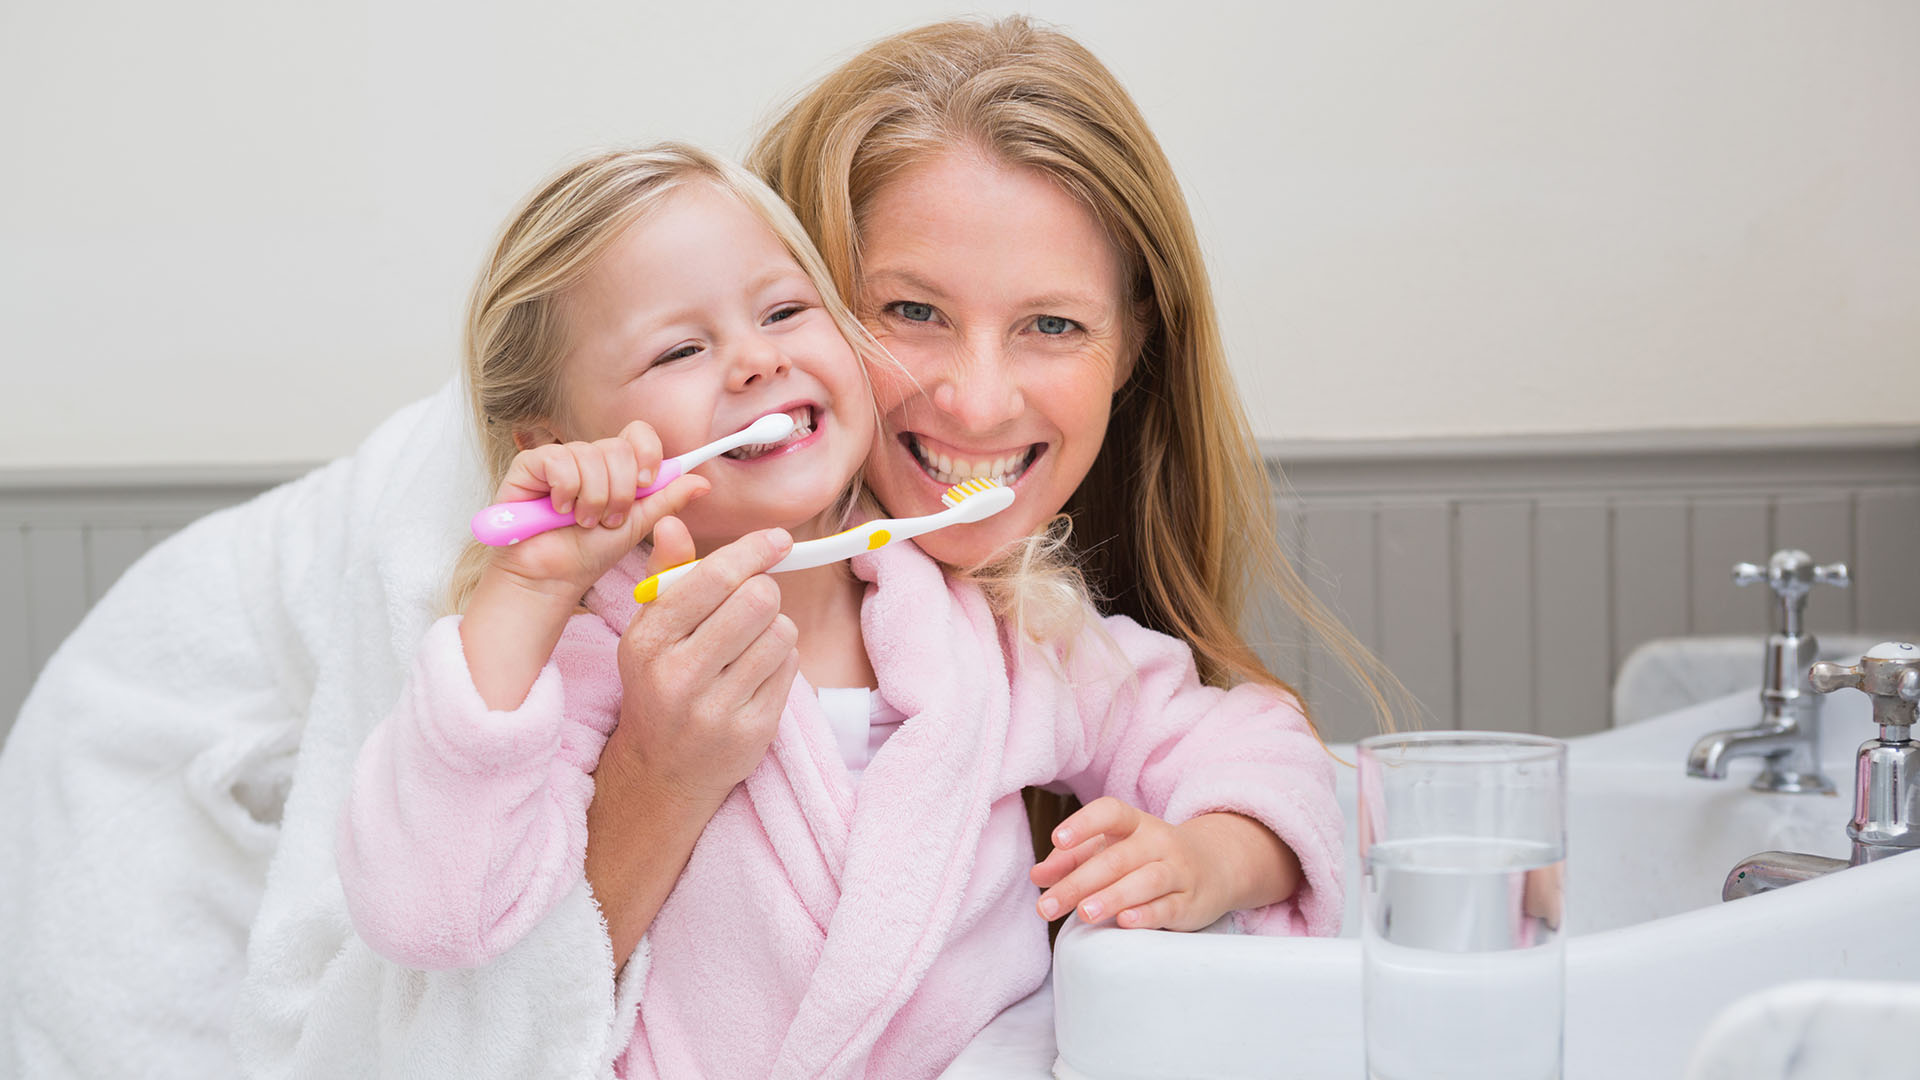 Los especialistas recomiendan cepillarse los dientes 2 veces al día con pasta con flúor (iStock)